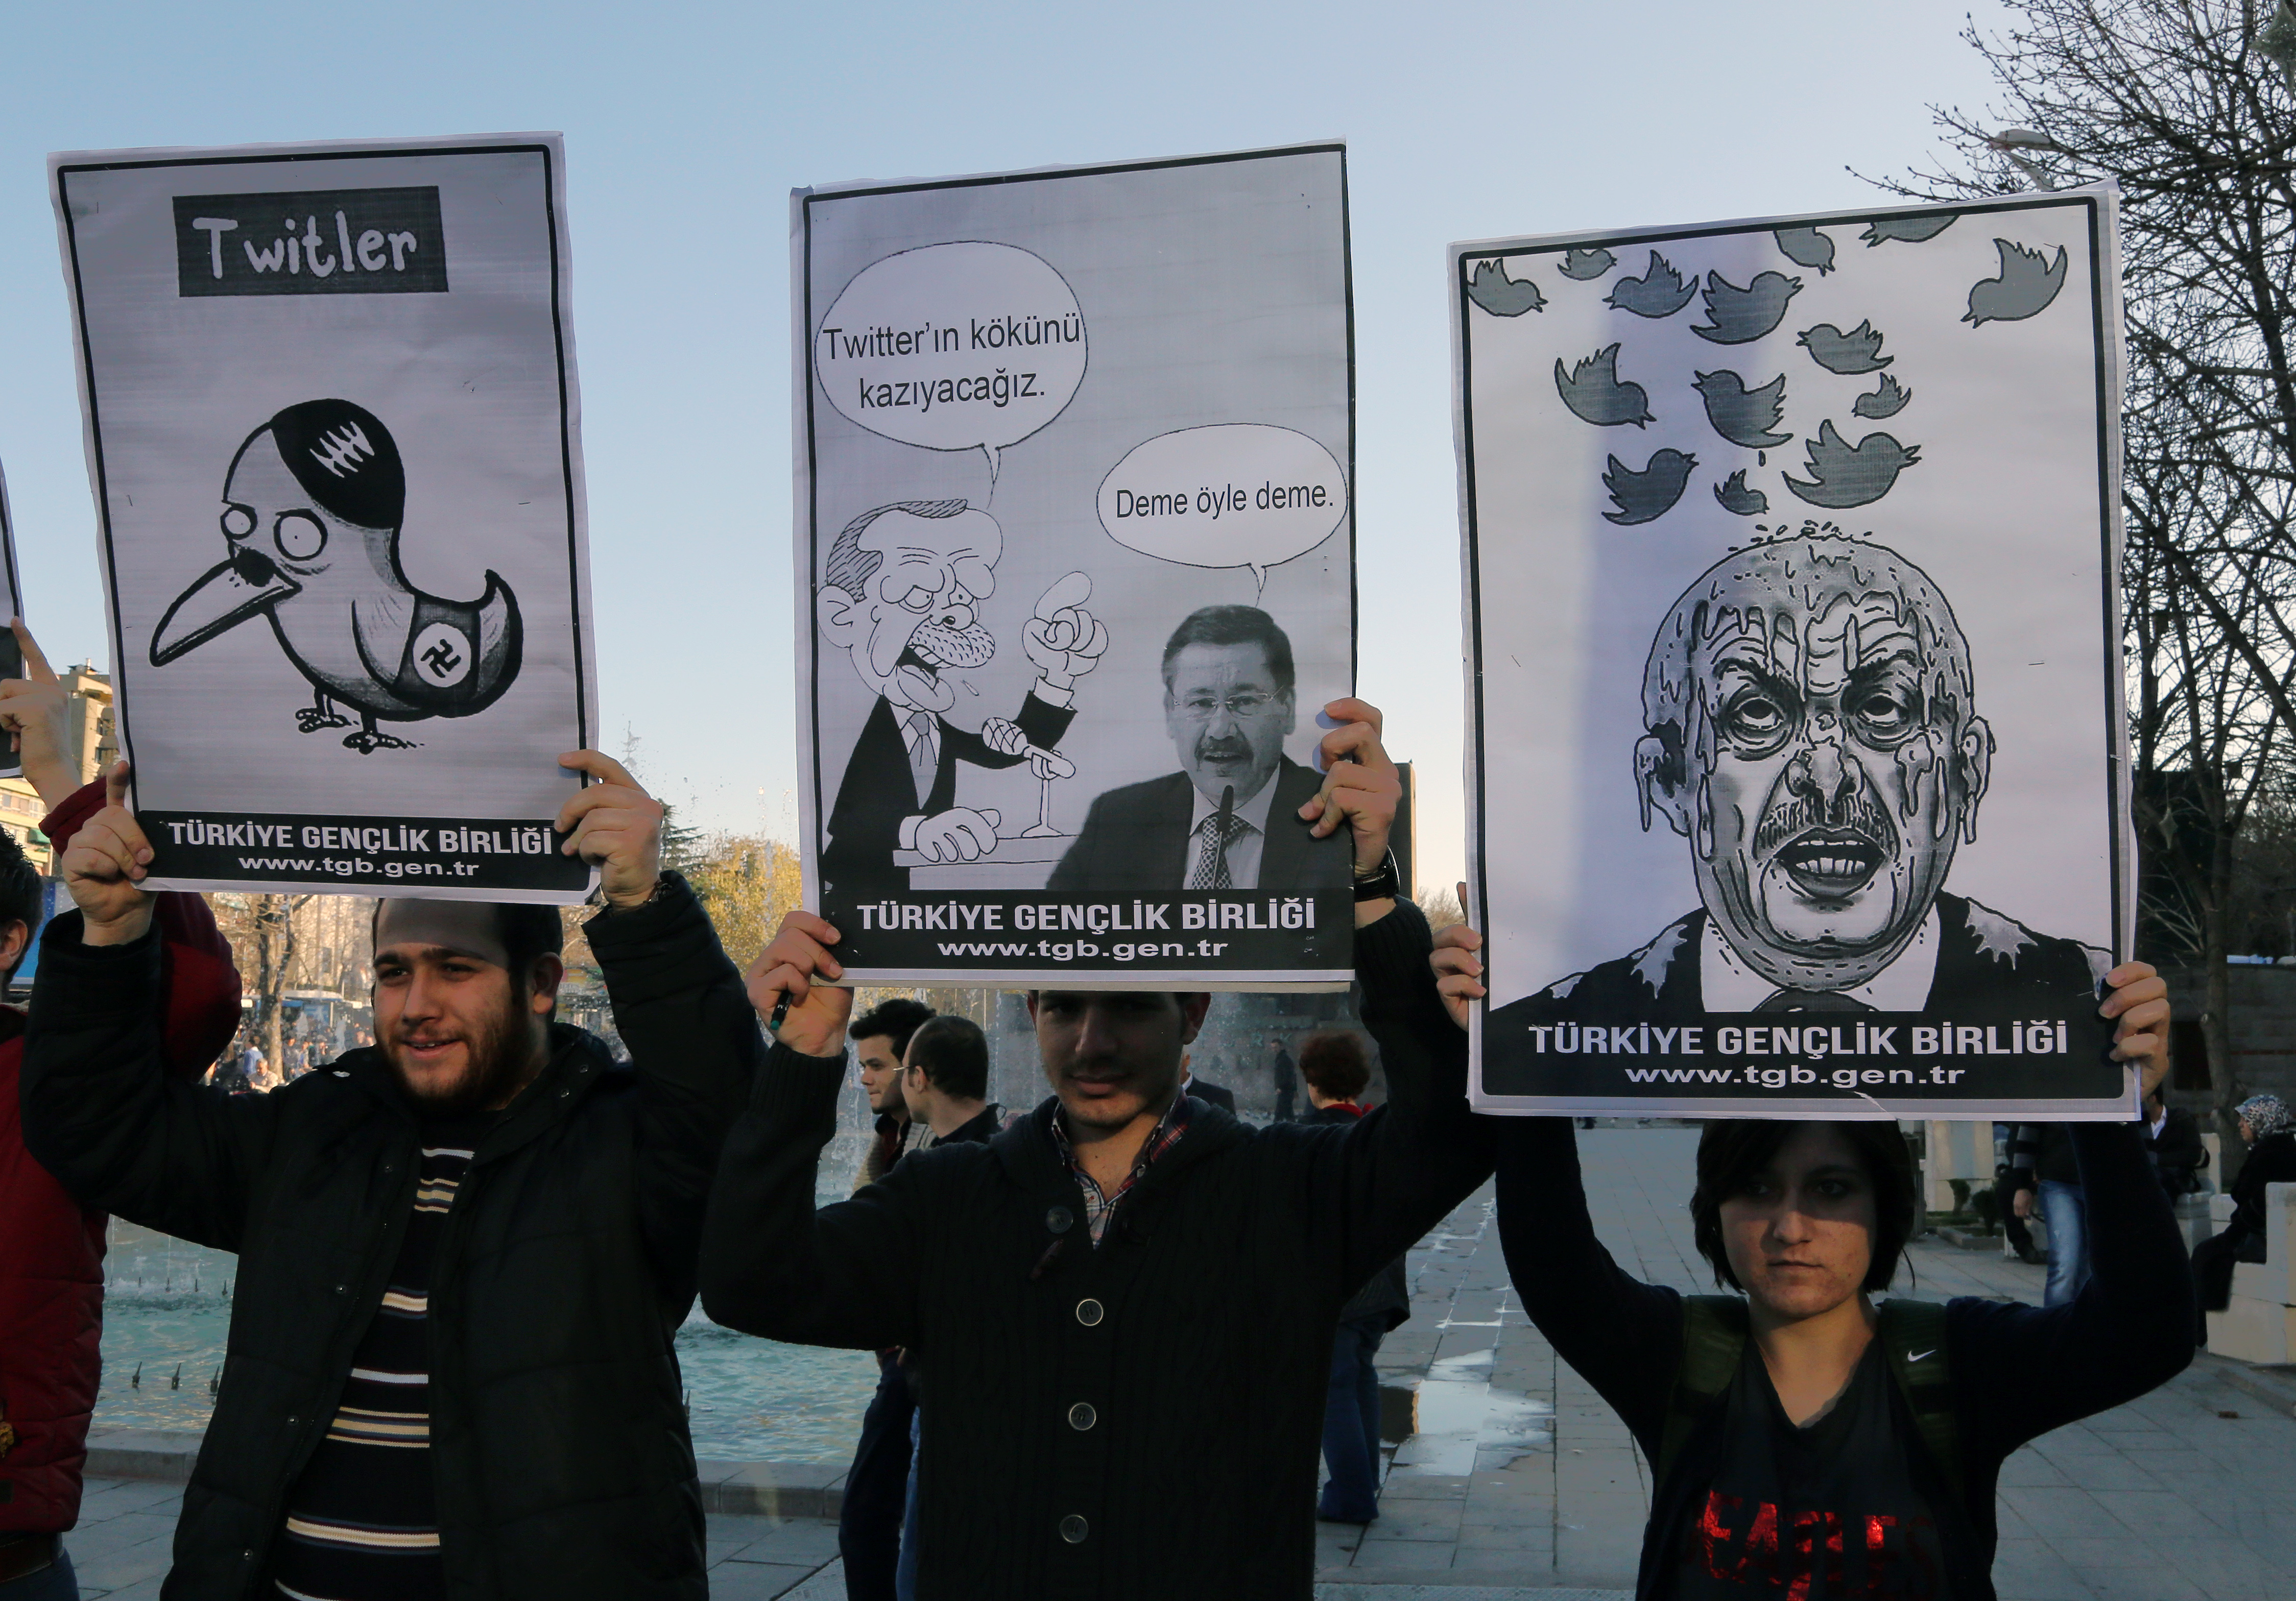 Los miembros de la Unión Juvenil de Turquía muestran caricaturas del primer ministro de Turquía Recep Tayyip Erdogan durante una protesta contra la prohibición de Twitter, Ankara, 21 de marzo de 2014